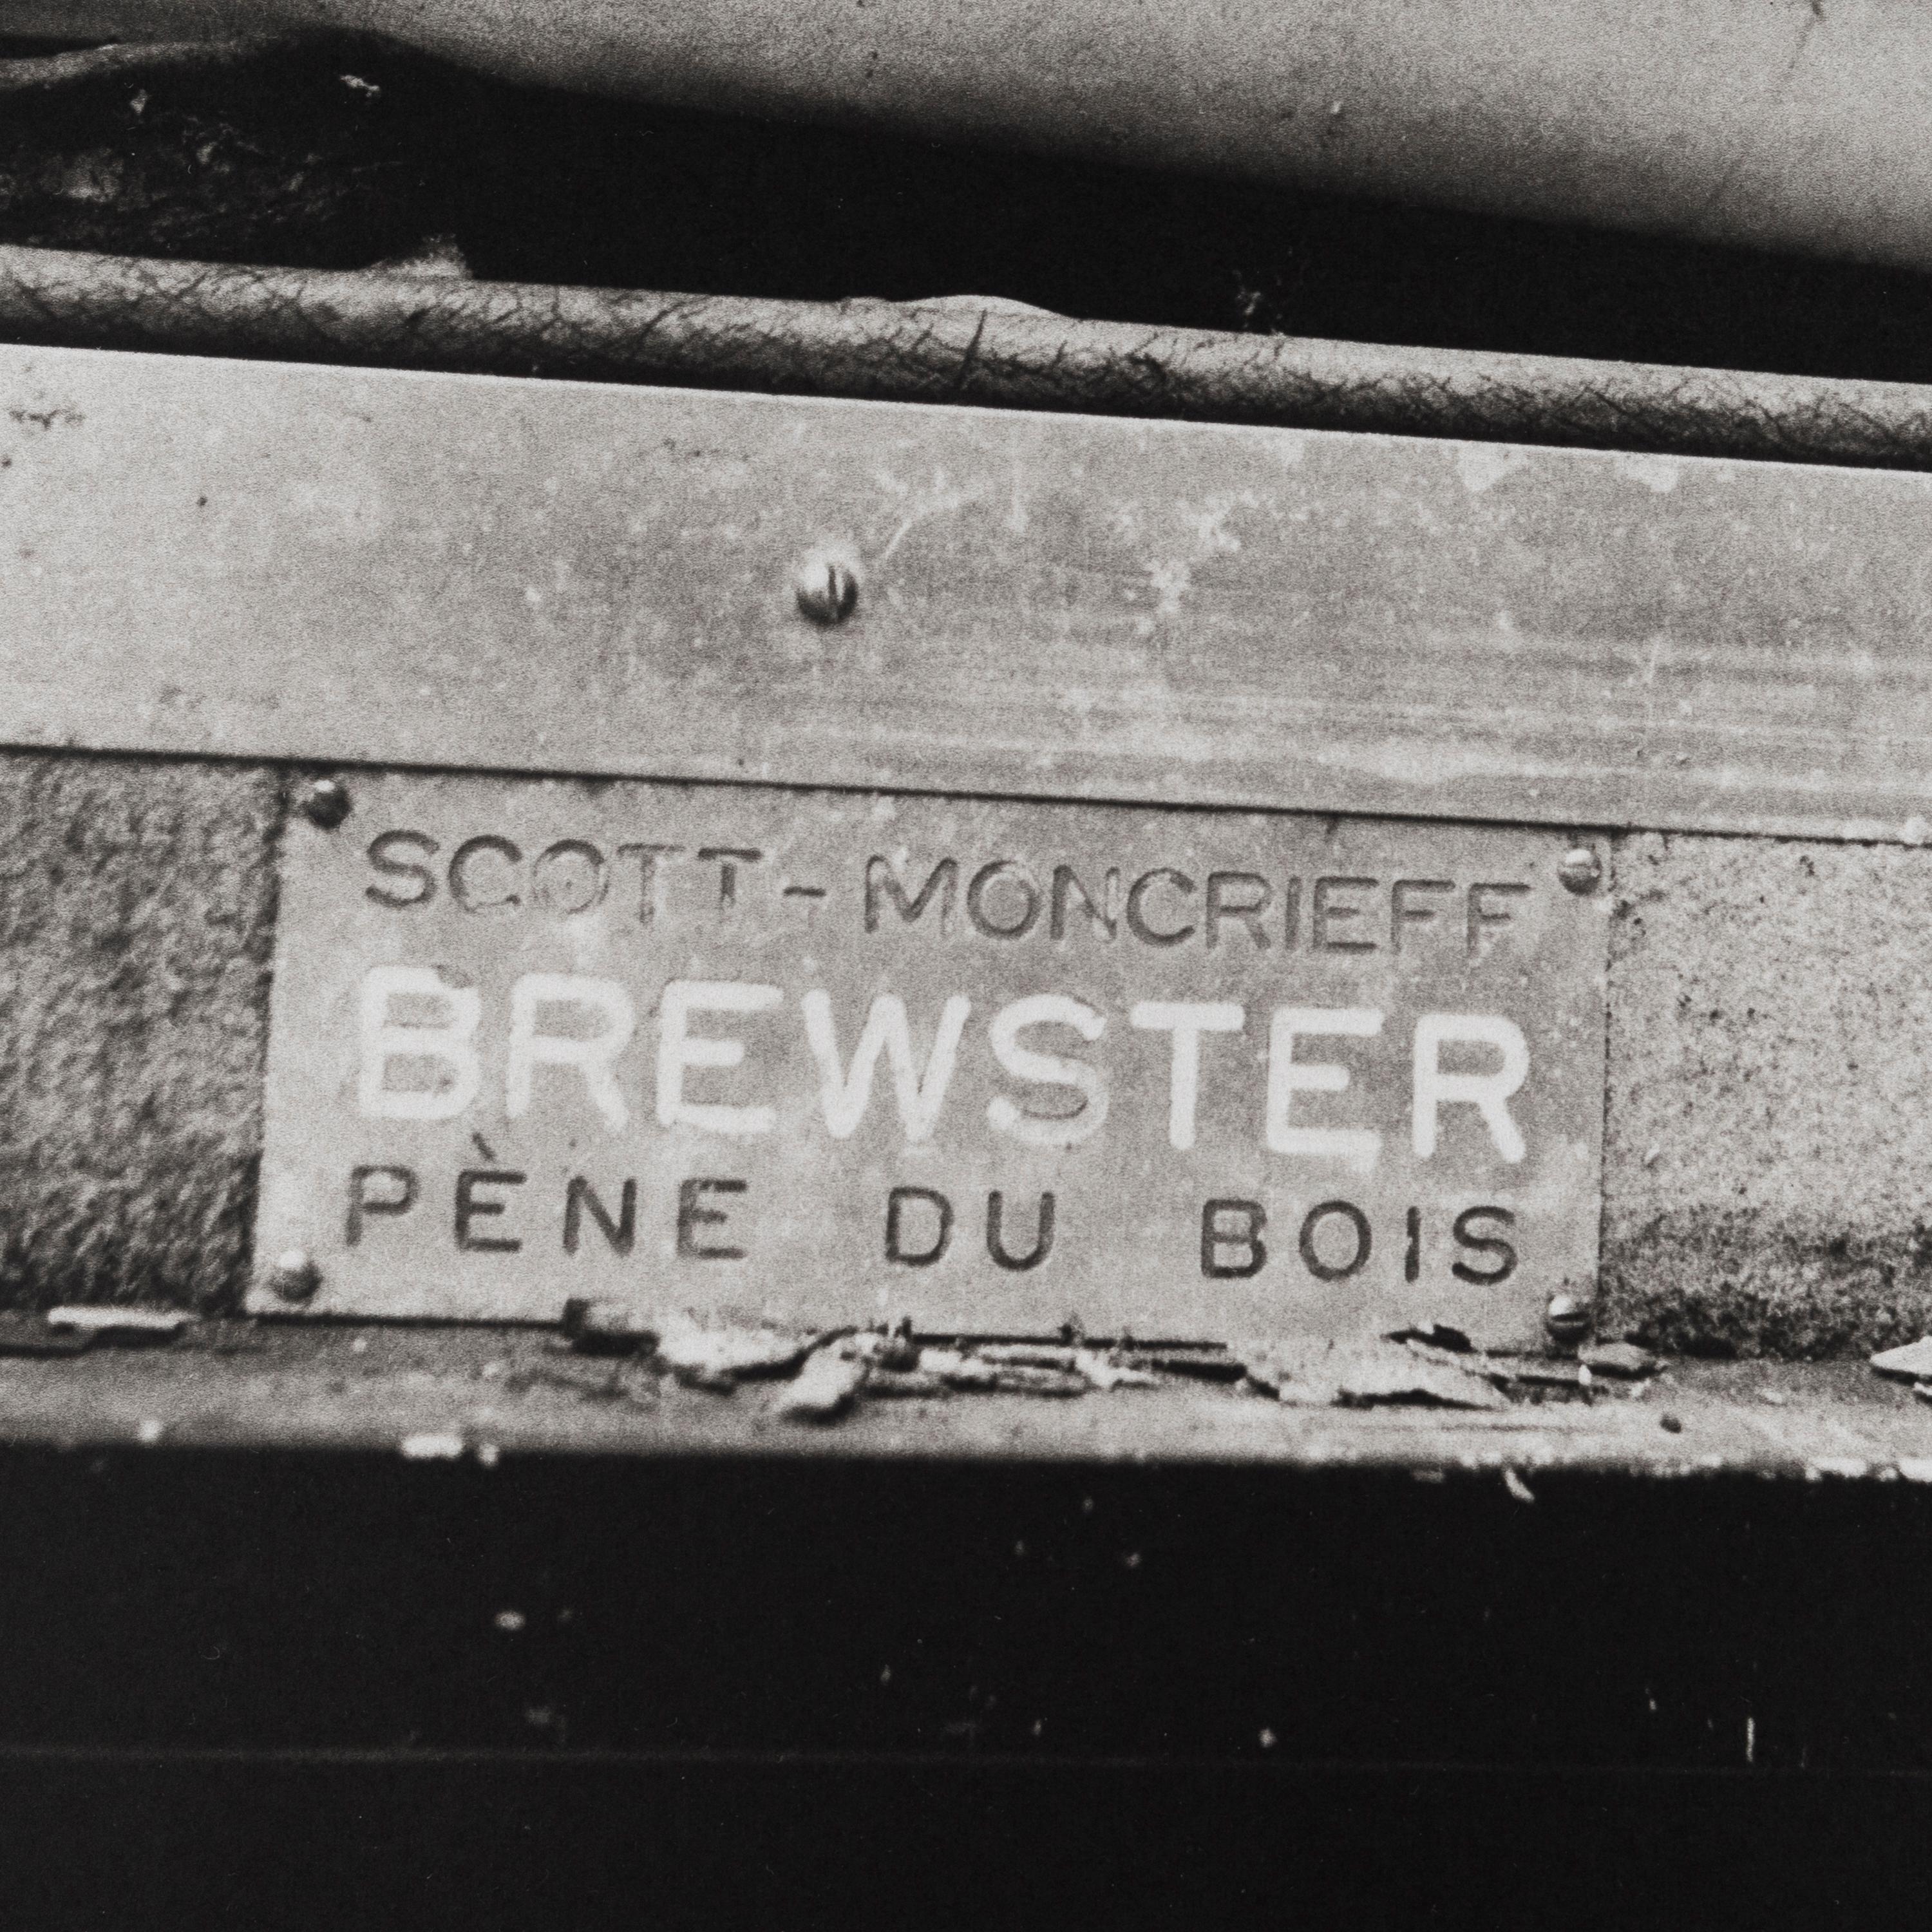 Wm. Pène du Bois’s Rolls Royce, Beaulieu-sur-Mer, June 1993 - Photograph by Jonathan Becker